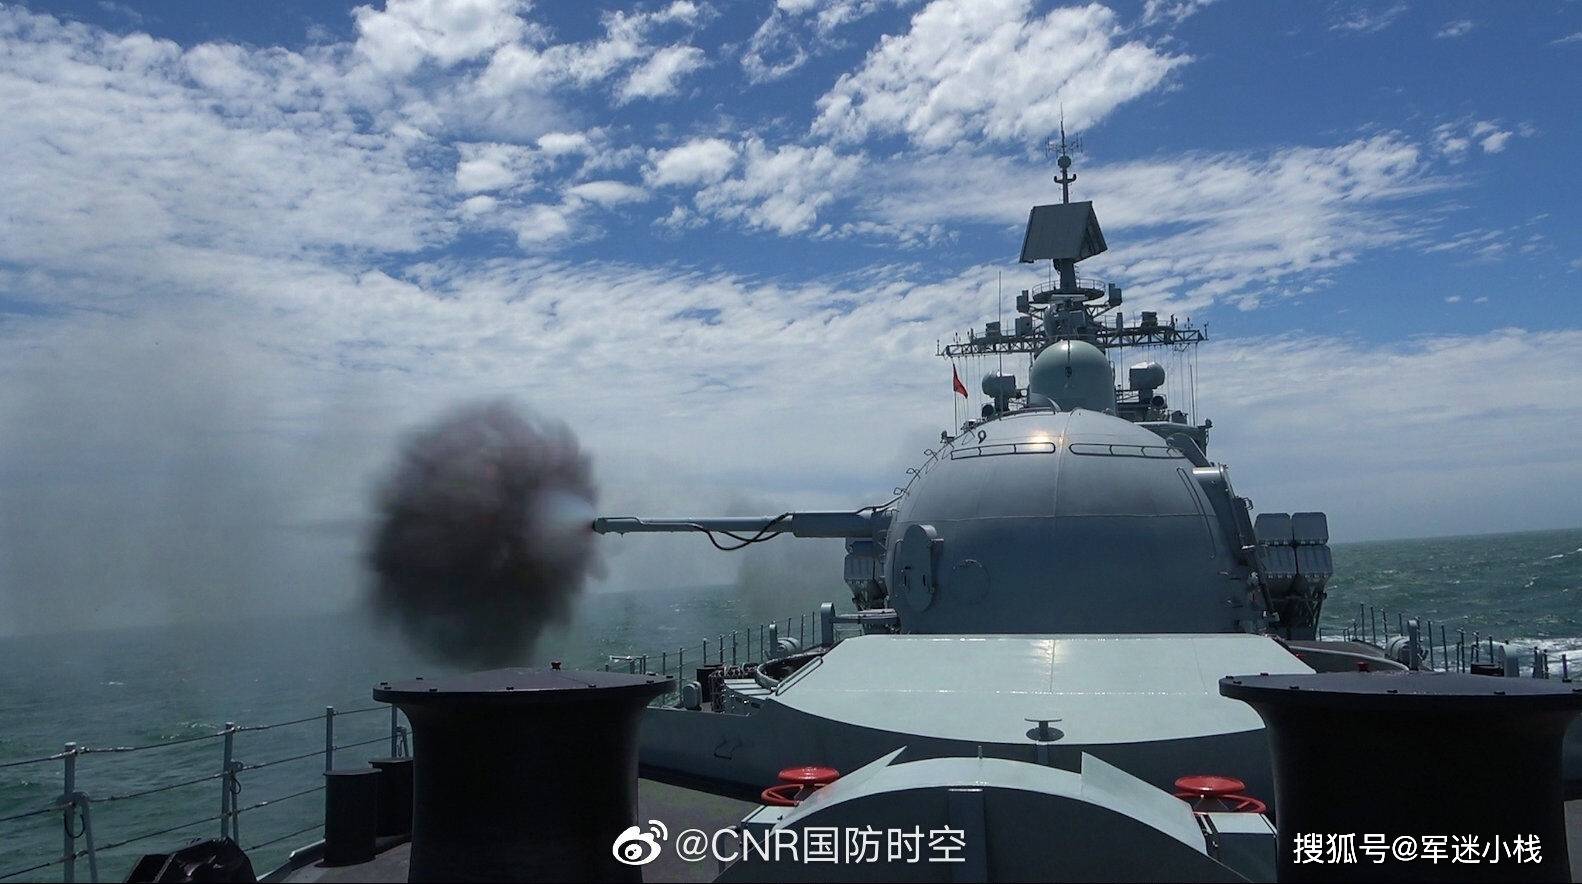 杭州舰改装后首次亮相军演舰艏双管130舰炮依然威武霸气